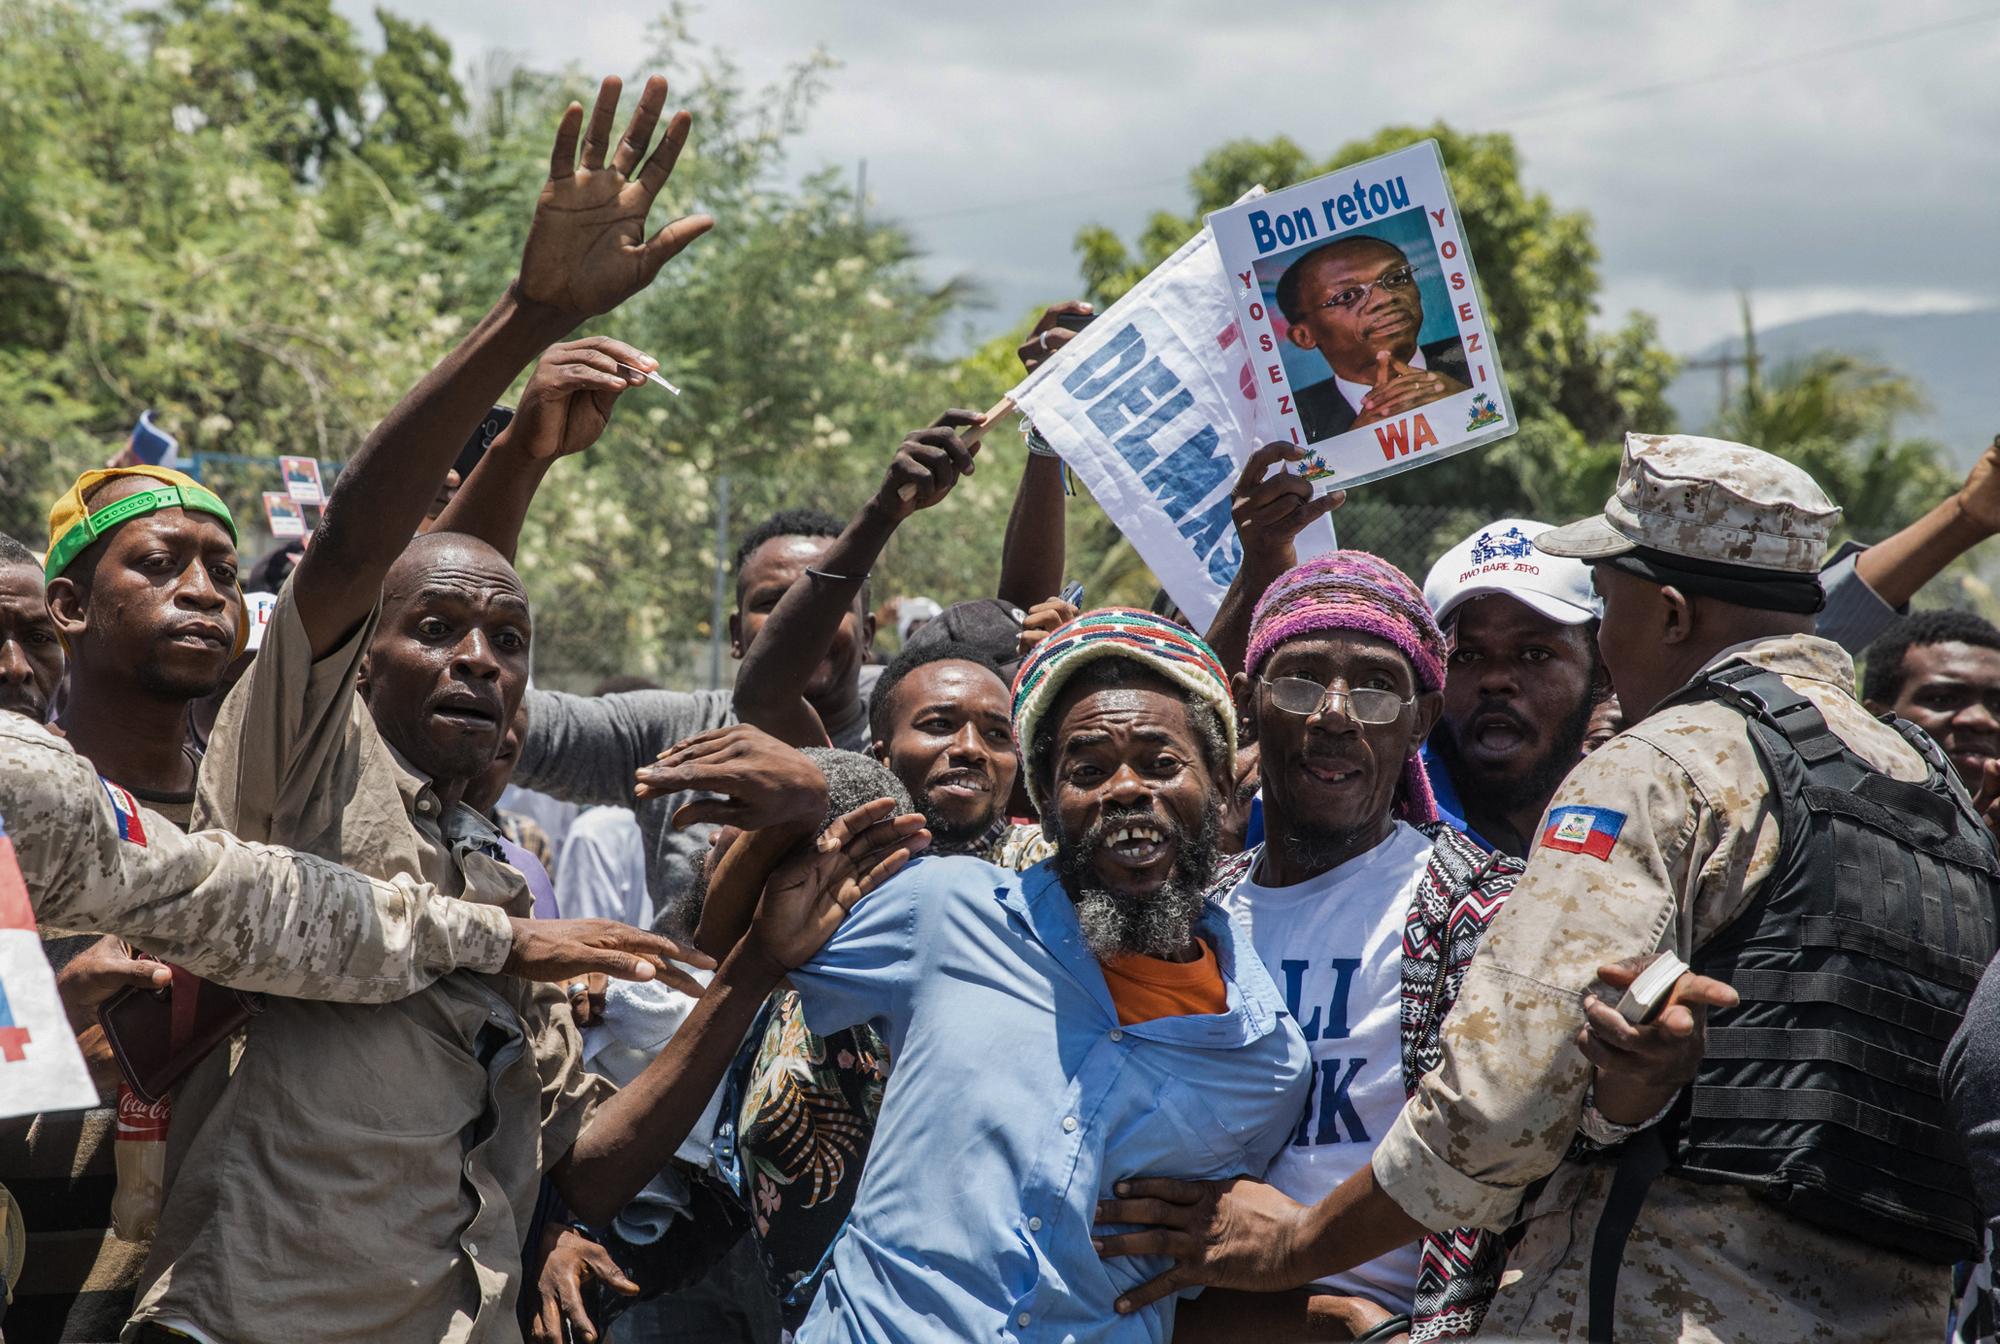 L'ancien président haïtien, Jean-Bertrand Aristide, a fait son retour sur l'île. Il était attendu par plusieurs centaines de supporters. [AFP - Valérie Baerswil]